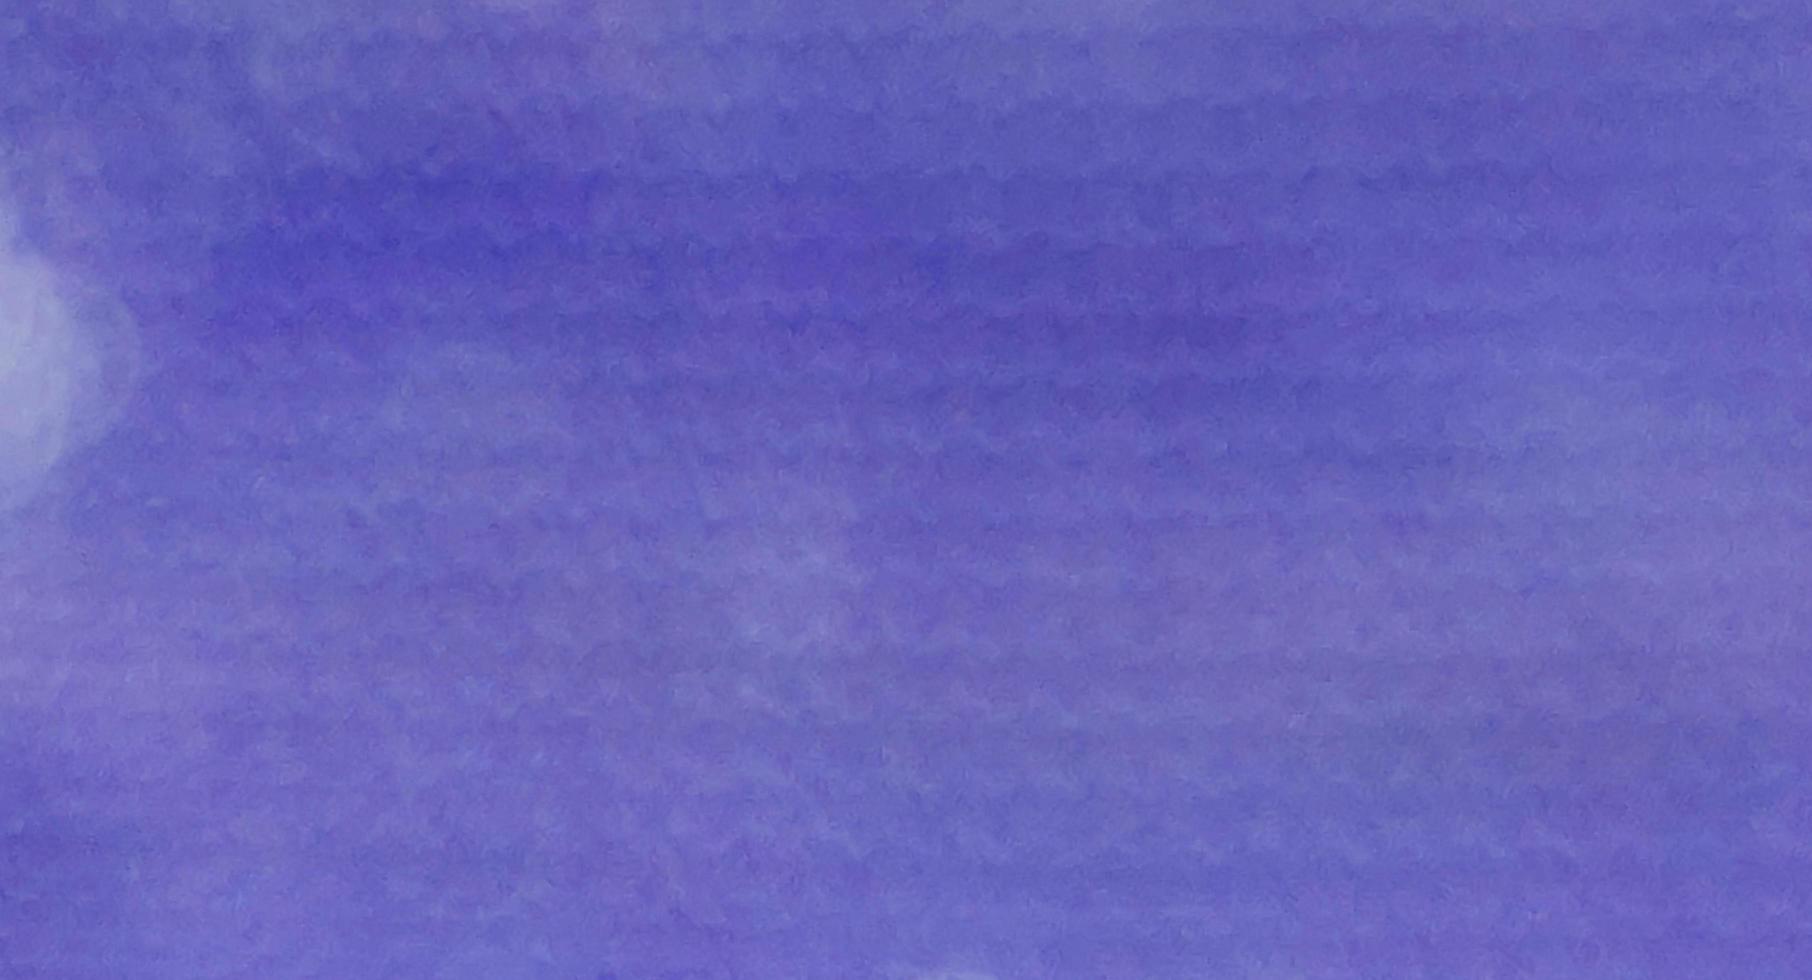 abstract blurrd blauw zeer peri pantone stof papier textuur achtergrond geschikt voor kleur van het jaar 2022 grafisch ontwerp decoratie opvul tekst reclame foto